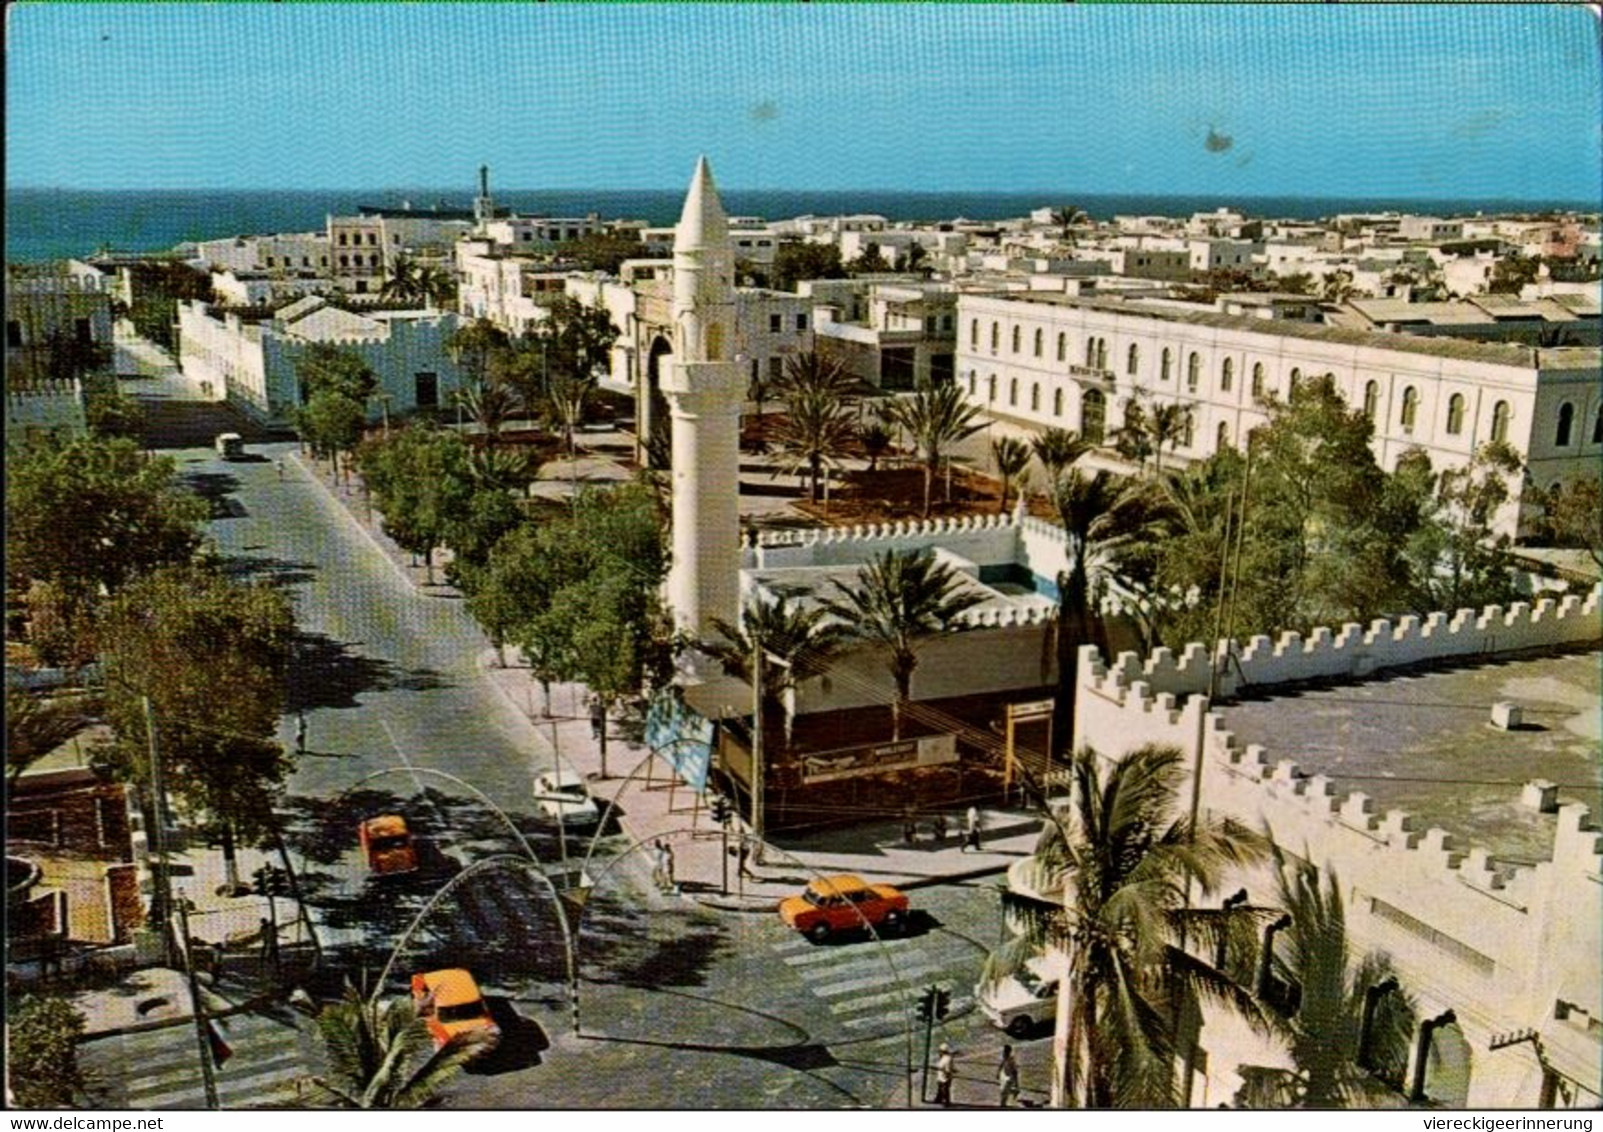 ! Moderne Ansichtskarte Aus Mogadischu, Moschee, Somalia, 1979, DDR, Berlin, Botschaftspost ? - Somalie